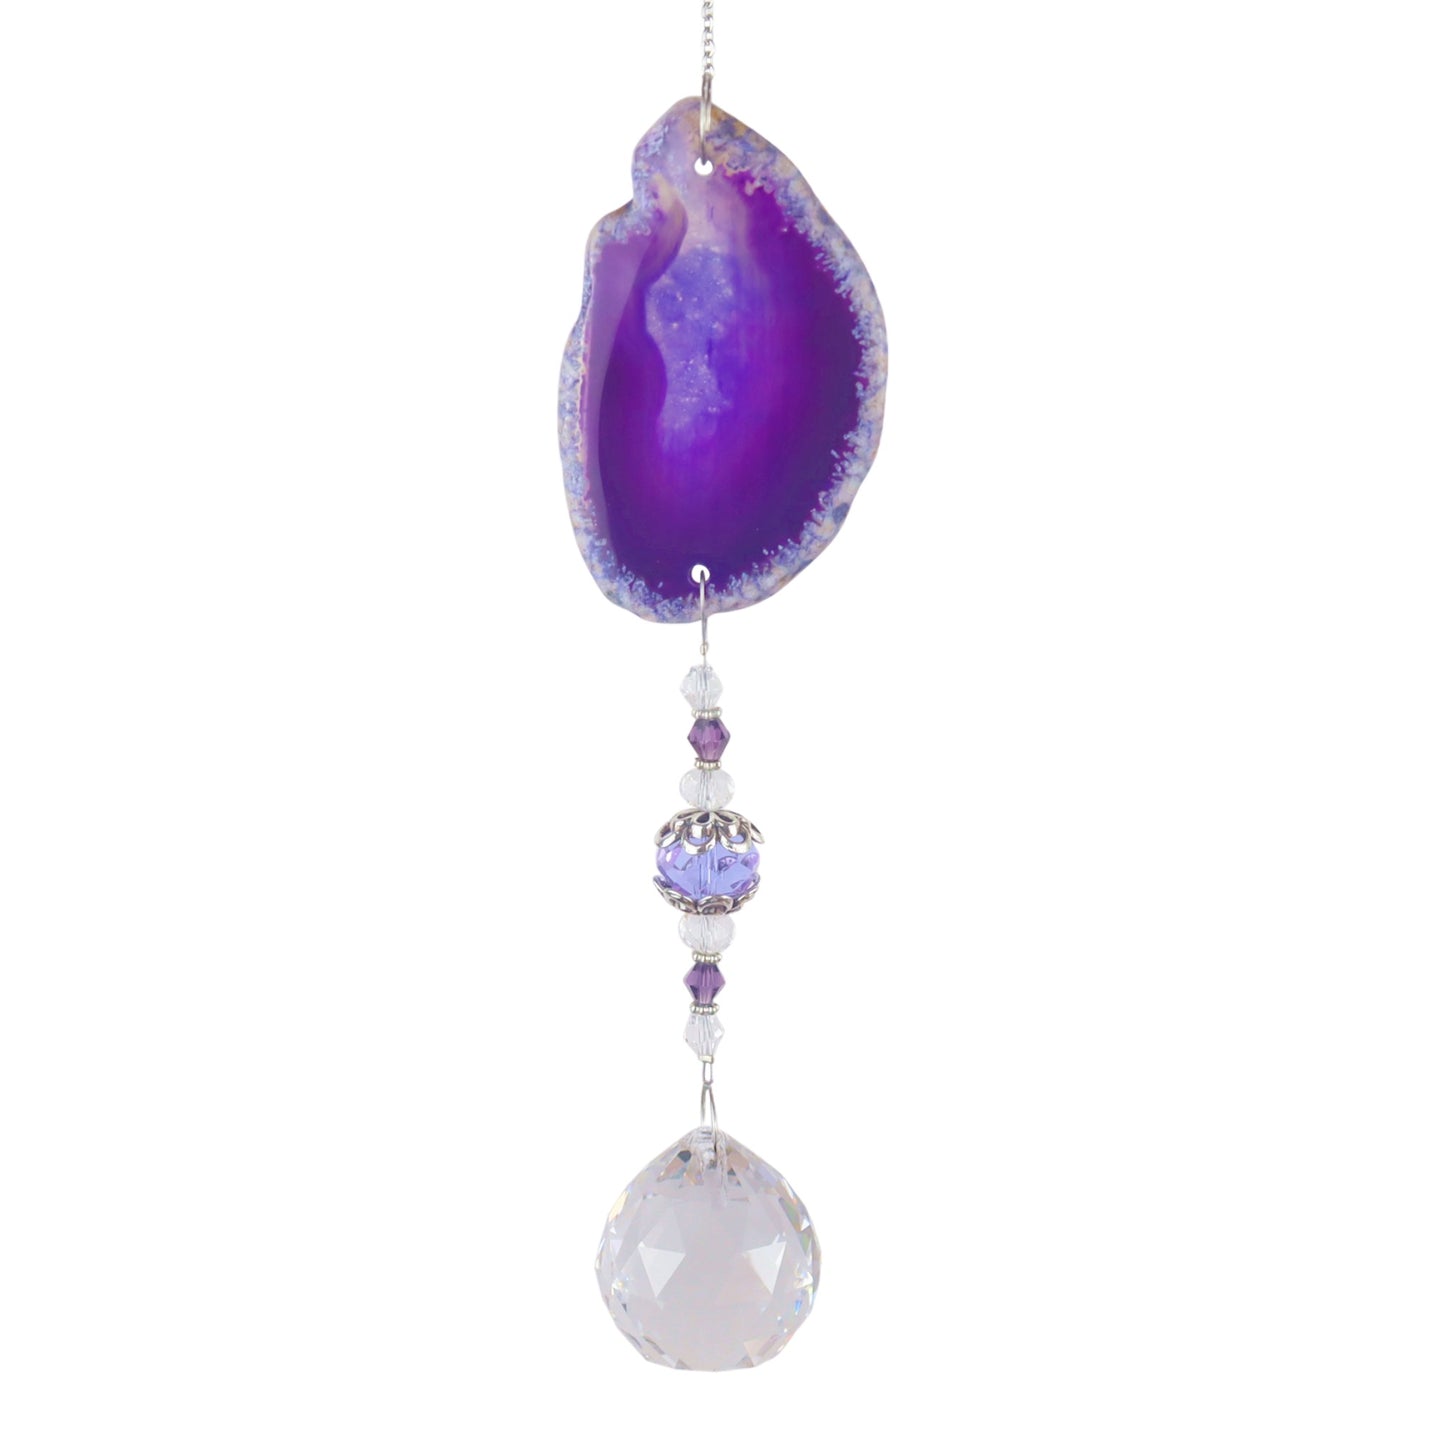 K9 Purple Agate Slice Crystal Hanger Suncatcher - 15.5 inches long - NEW523